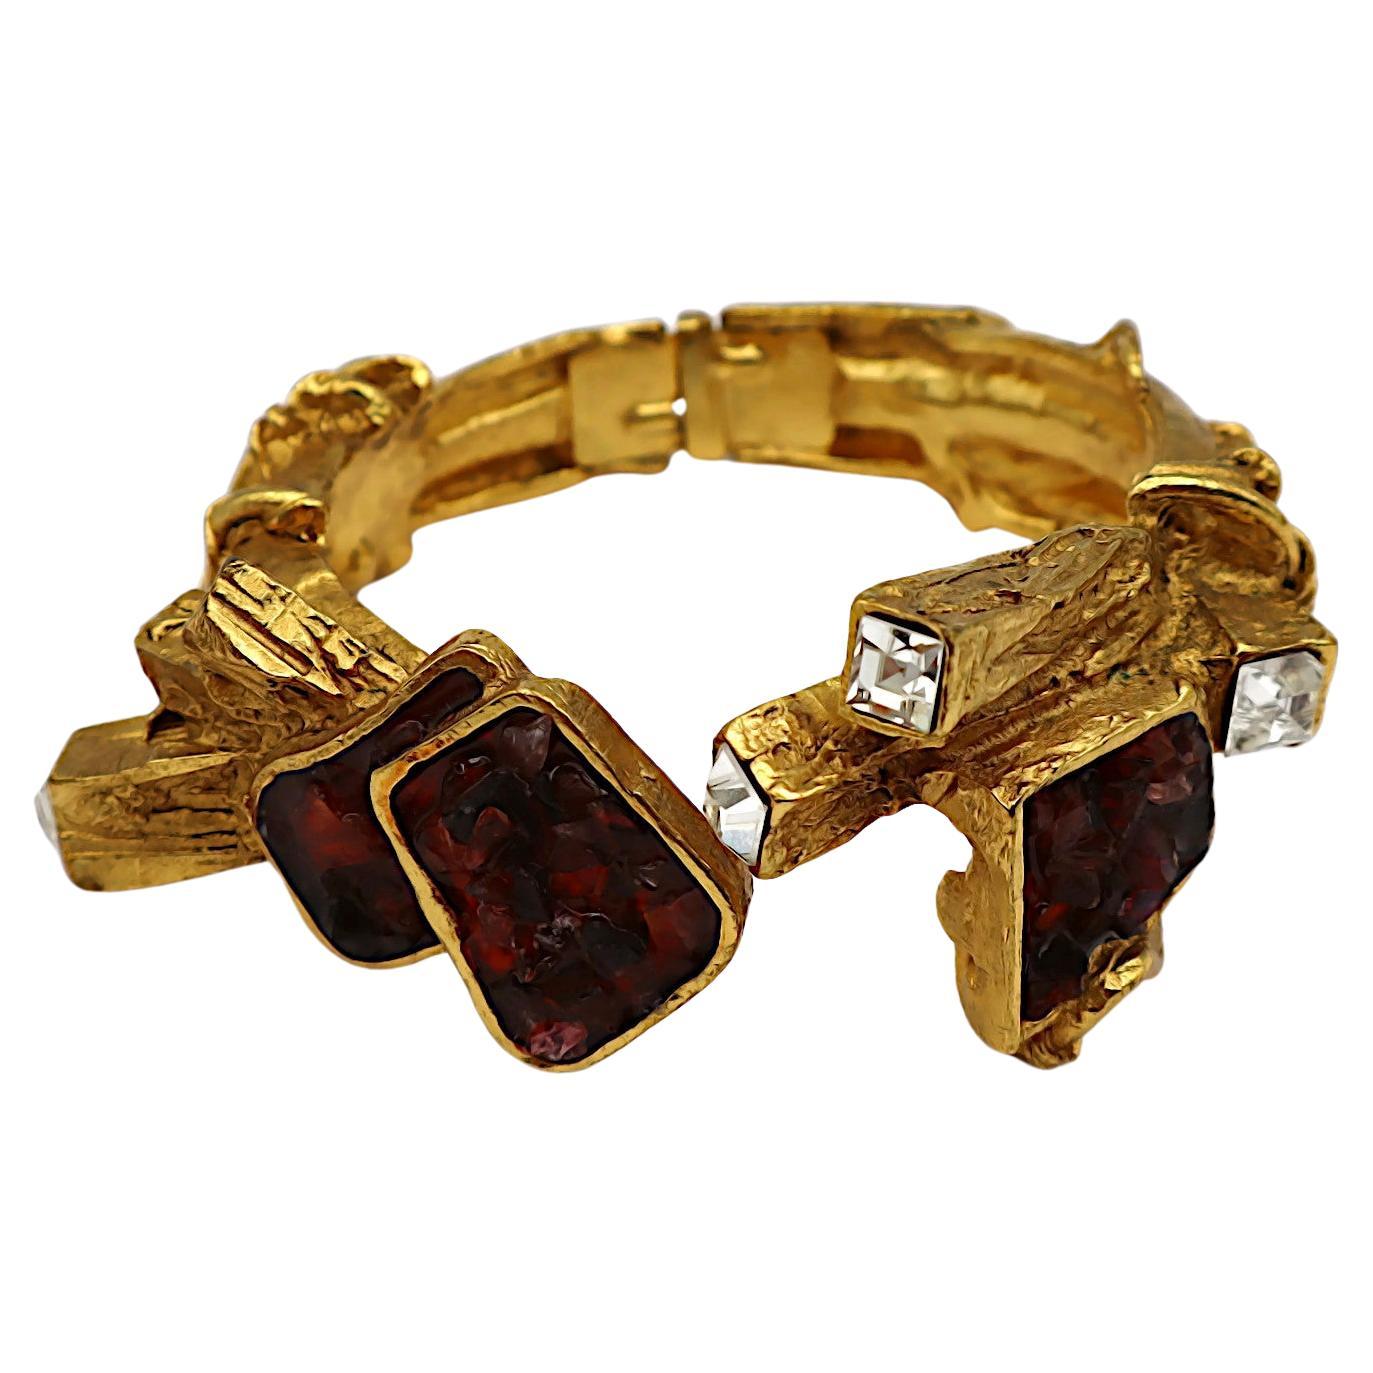 CHRISTIAN LACROIX Vintage Goldton Jewelled Clamper Bracelet